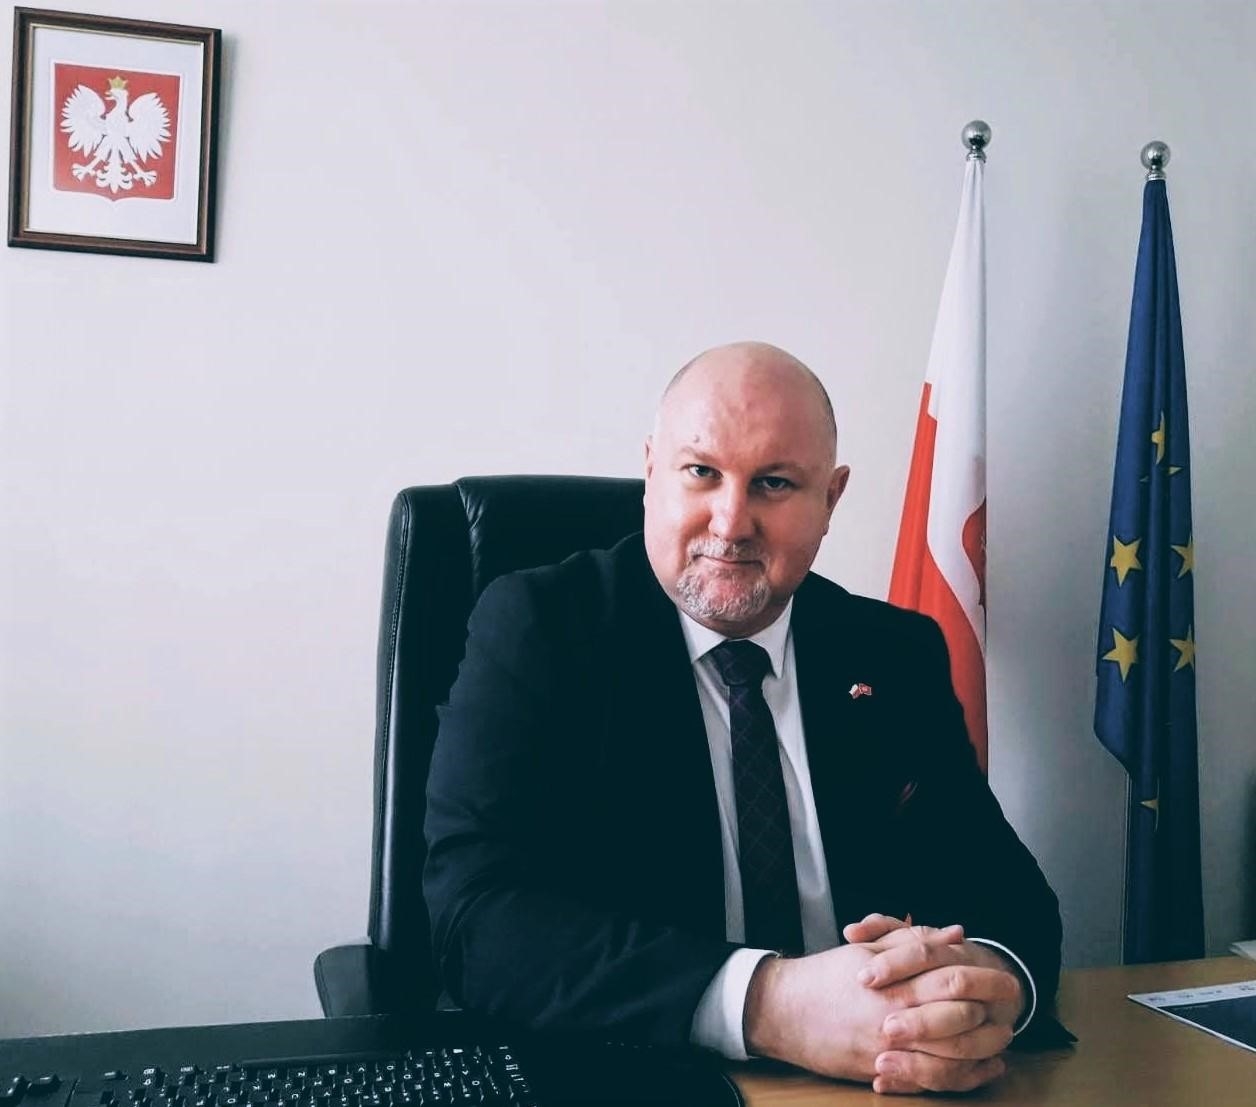 相片: 波兰驻香港总领事亚力山大．丹达(Aleksander Dańda)博士。